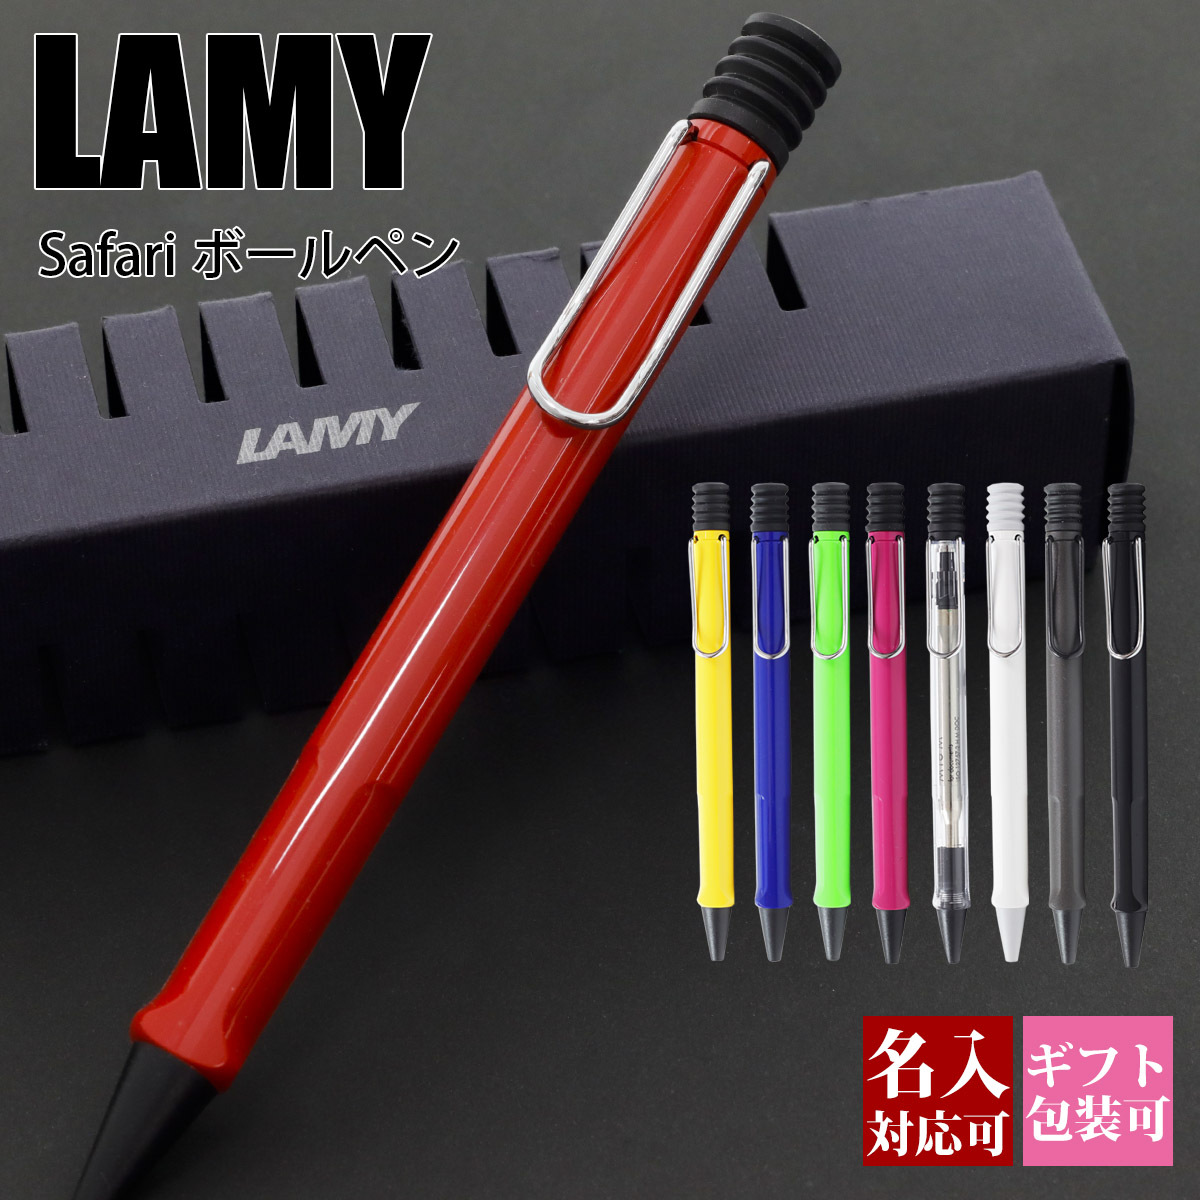 ボールペン 名入れ LAMY ラミー ボールペンシル 高級 ペン サファリ safari 油性 文房具 新品 国内正規品 1年保証 通販 ブランド